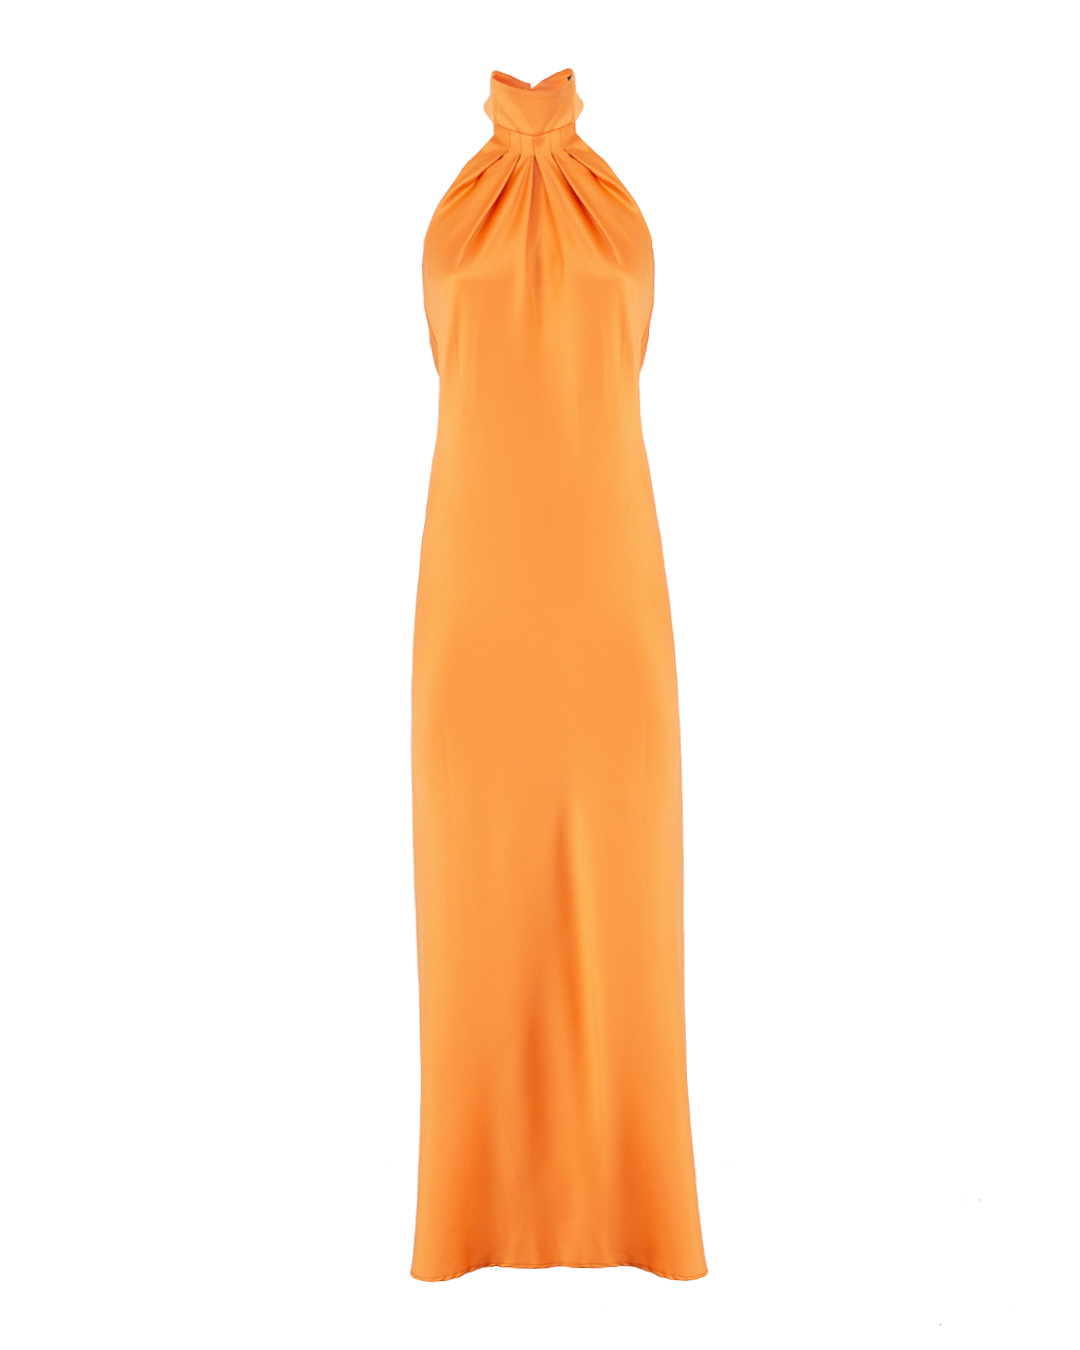 платье ACTUALEE 003810 оранжевый 46, размер 46 - фото 1